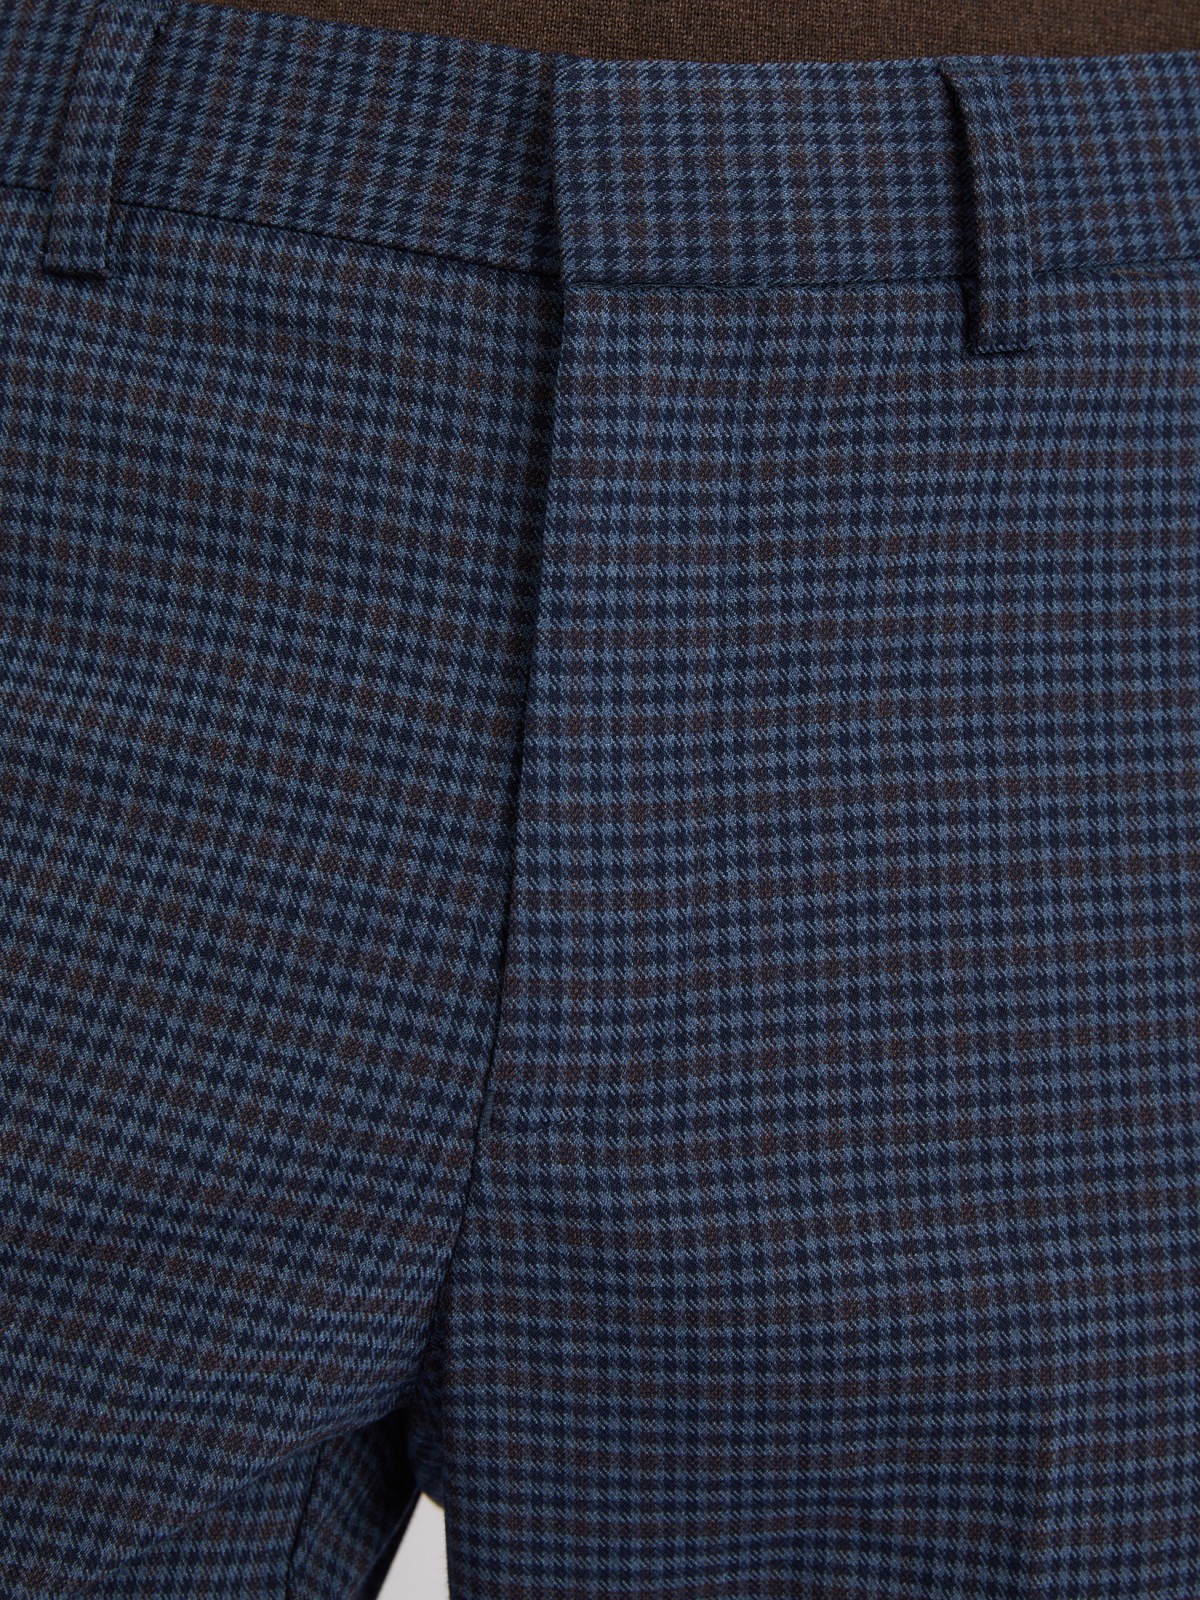 Офисные брюки силуэта Slim со стрелками и узором в клетку zolla 012337366033, цвет голубой, размер 34 - фото 4